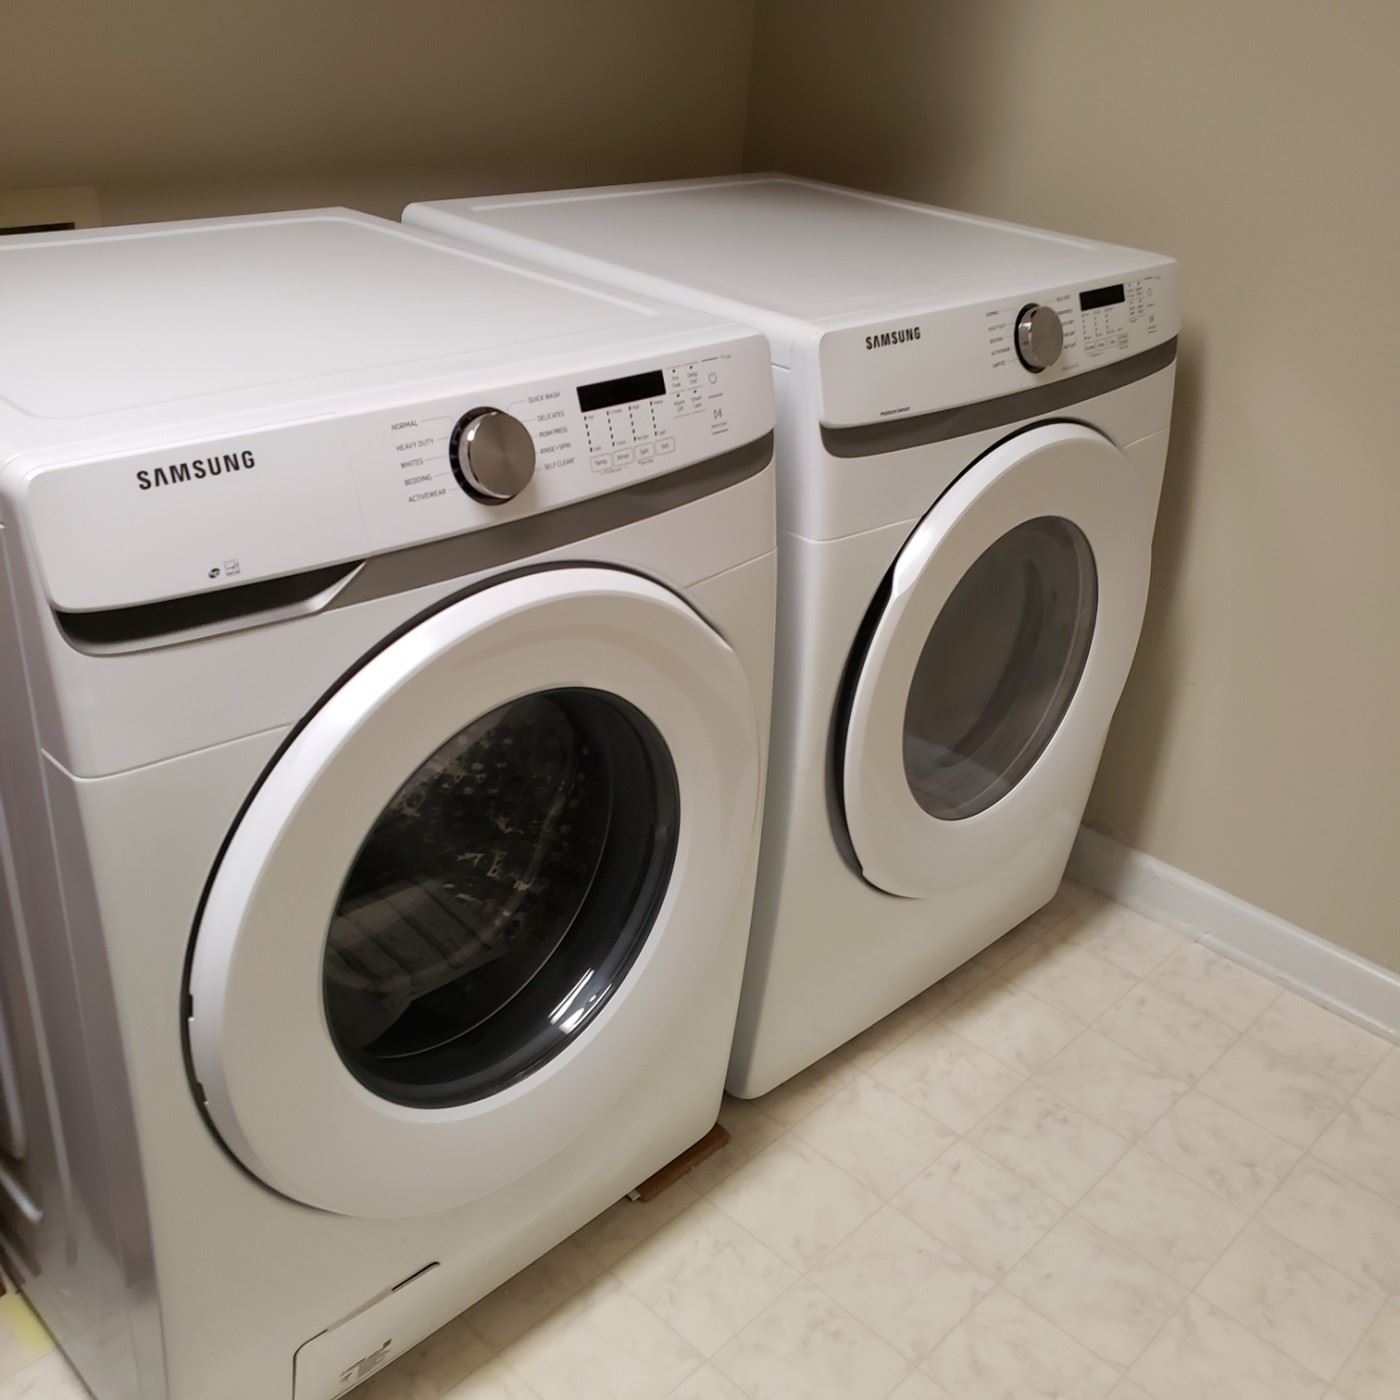 SAMSUNG front loader washer/dryer.   Bought Nov 2020